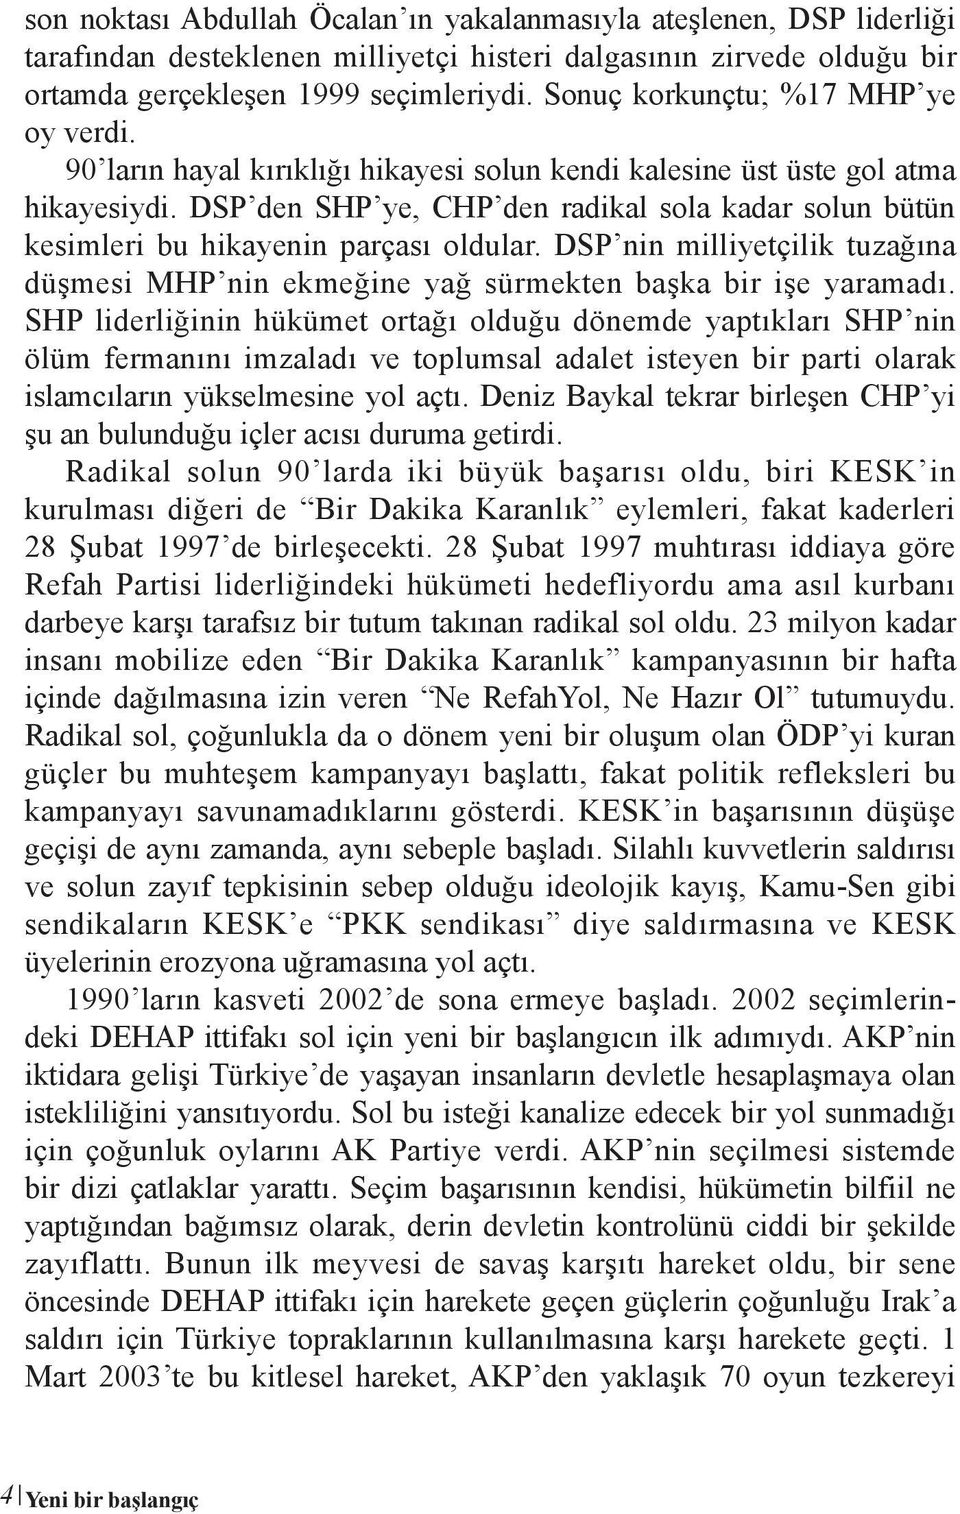 DSP den SHP ye, CHP den radikal sola kadar solun bütün kesimleri bu hikayenin parçası oldular. DSP nin milliyetçilik tuzağına düşmesi MHP nin ekmeğine yağ sürmekten başka bir işe yaramadı.